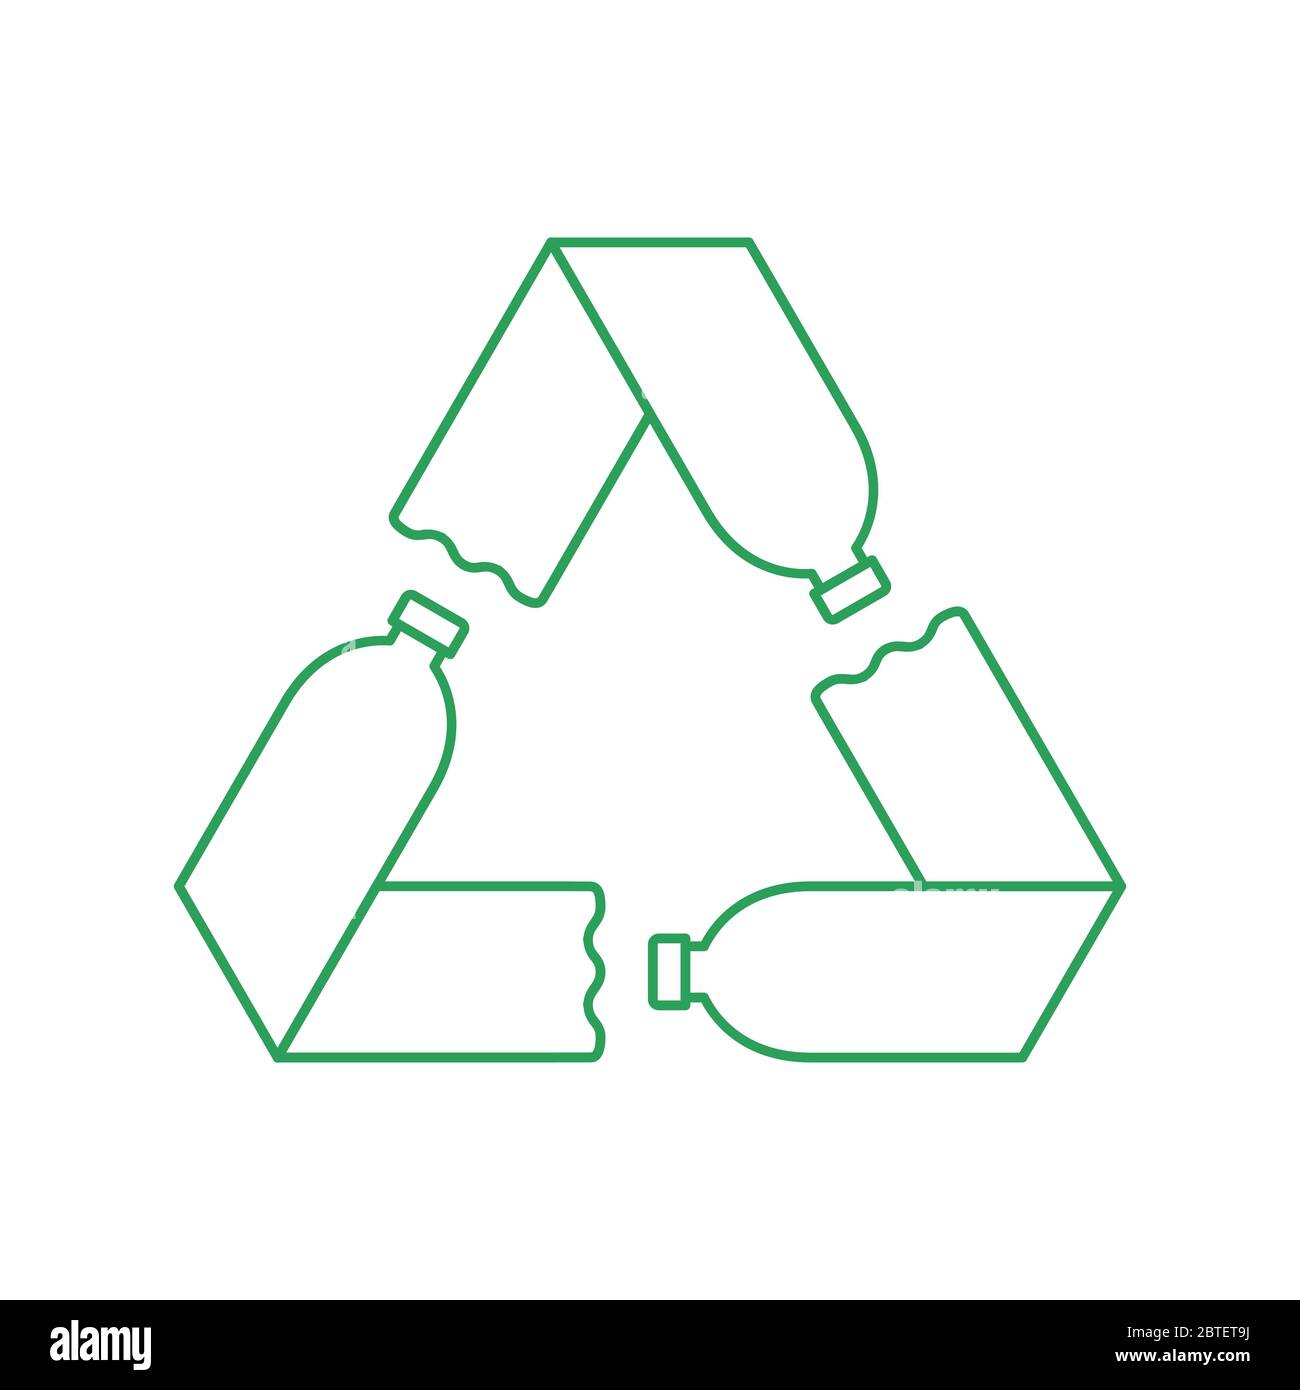 Symbole de recyclage vert avec trois bouteilles en plastique. Concept de recyclage du plastique. Boucle Mobius avec flèches. Animal réutilisable respectueux de l'environnement. Vecteur Illustration de Vecteur